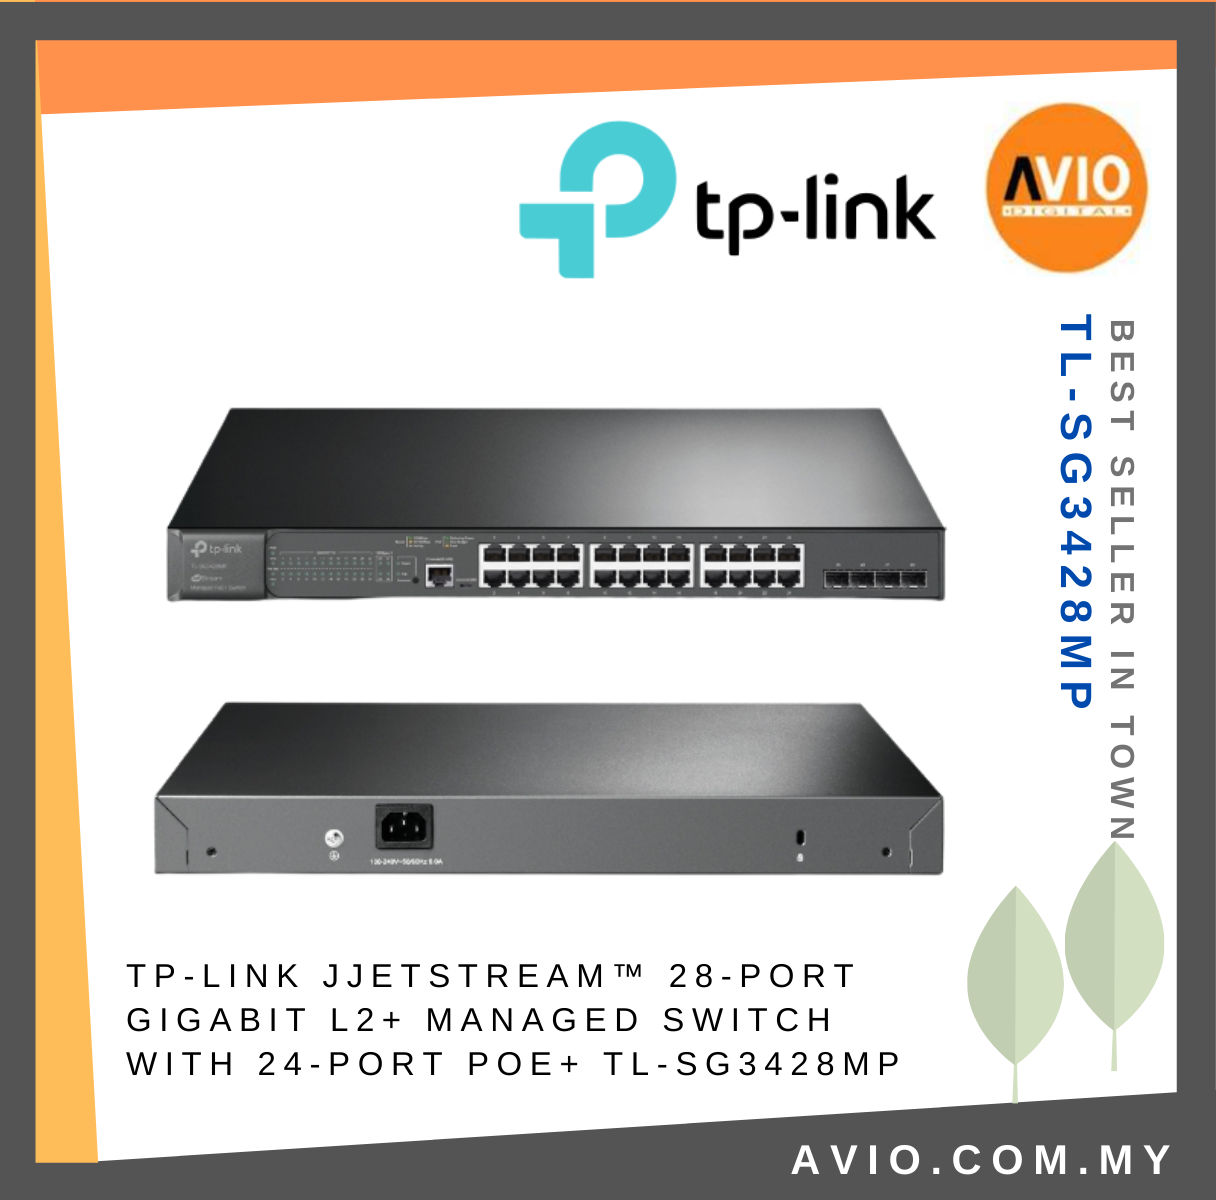  TP-Link TL-SG3428  24 Port Gigabit Switch, 4 SFP